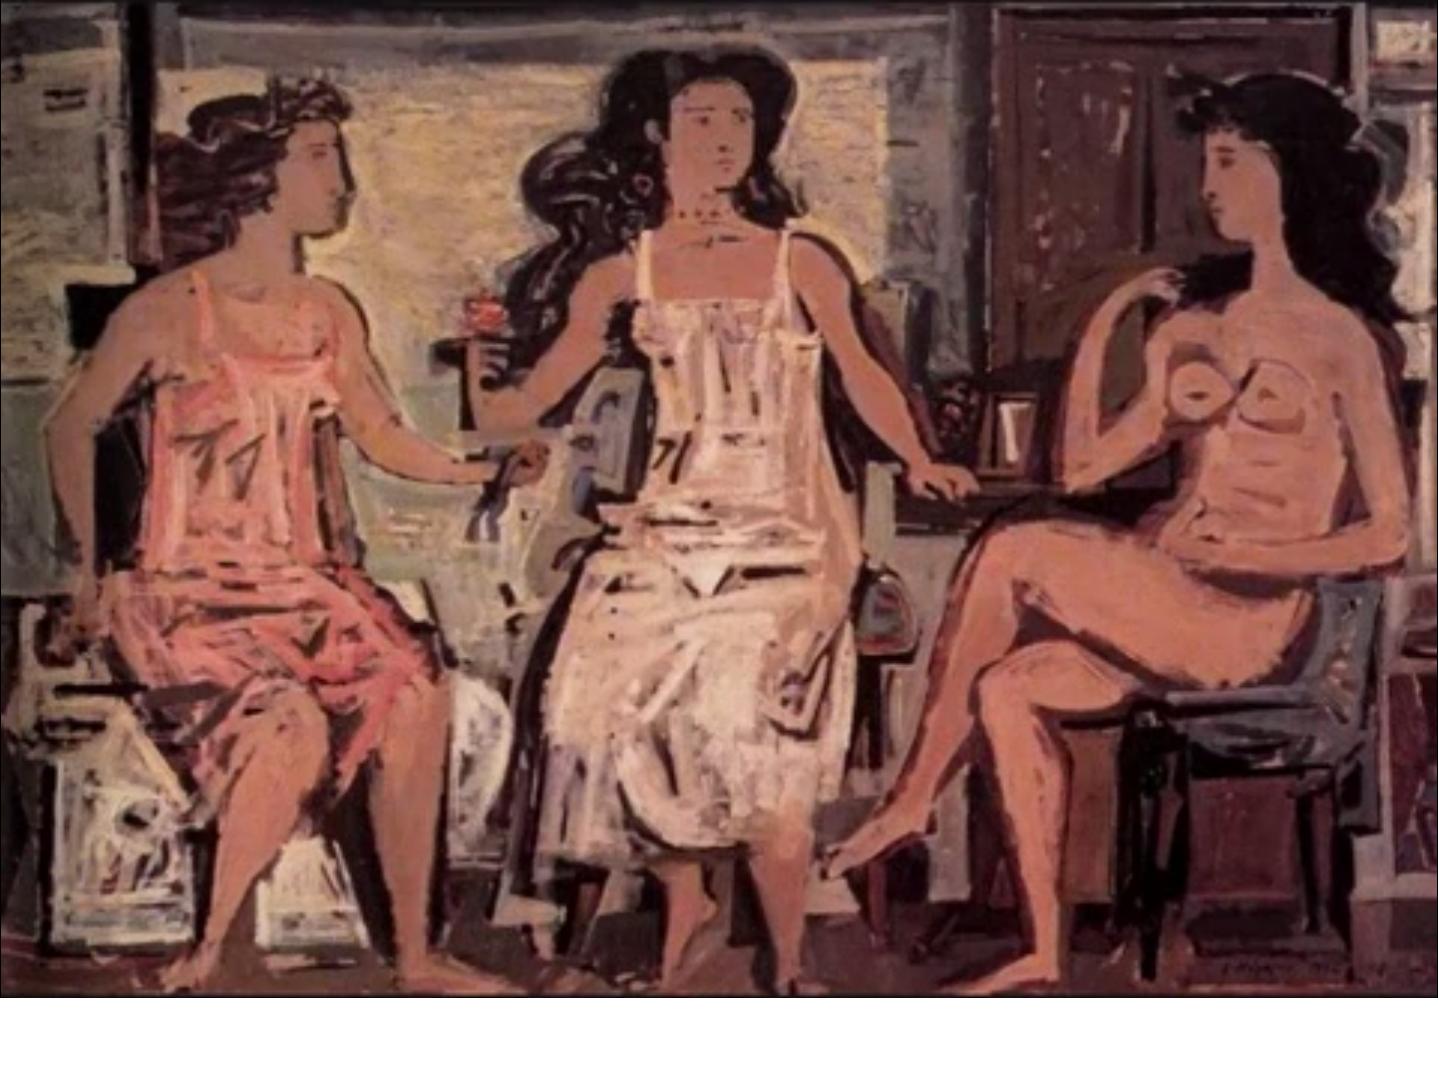 Three women sitting